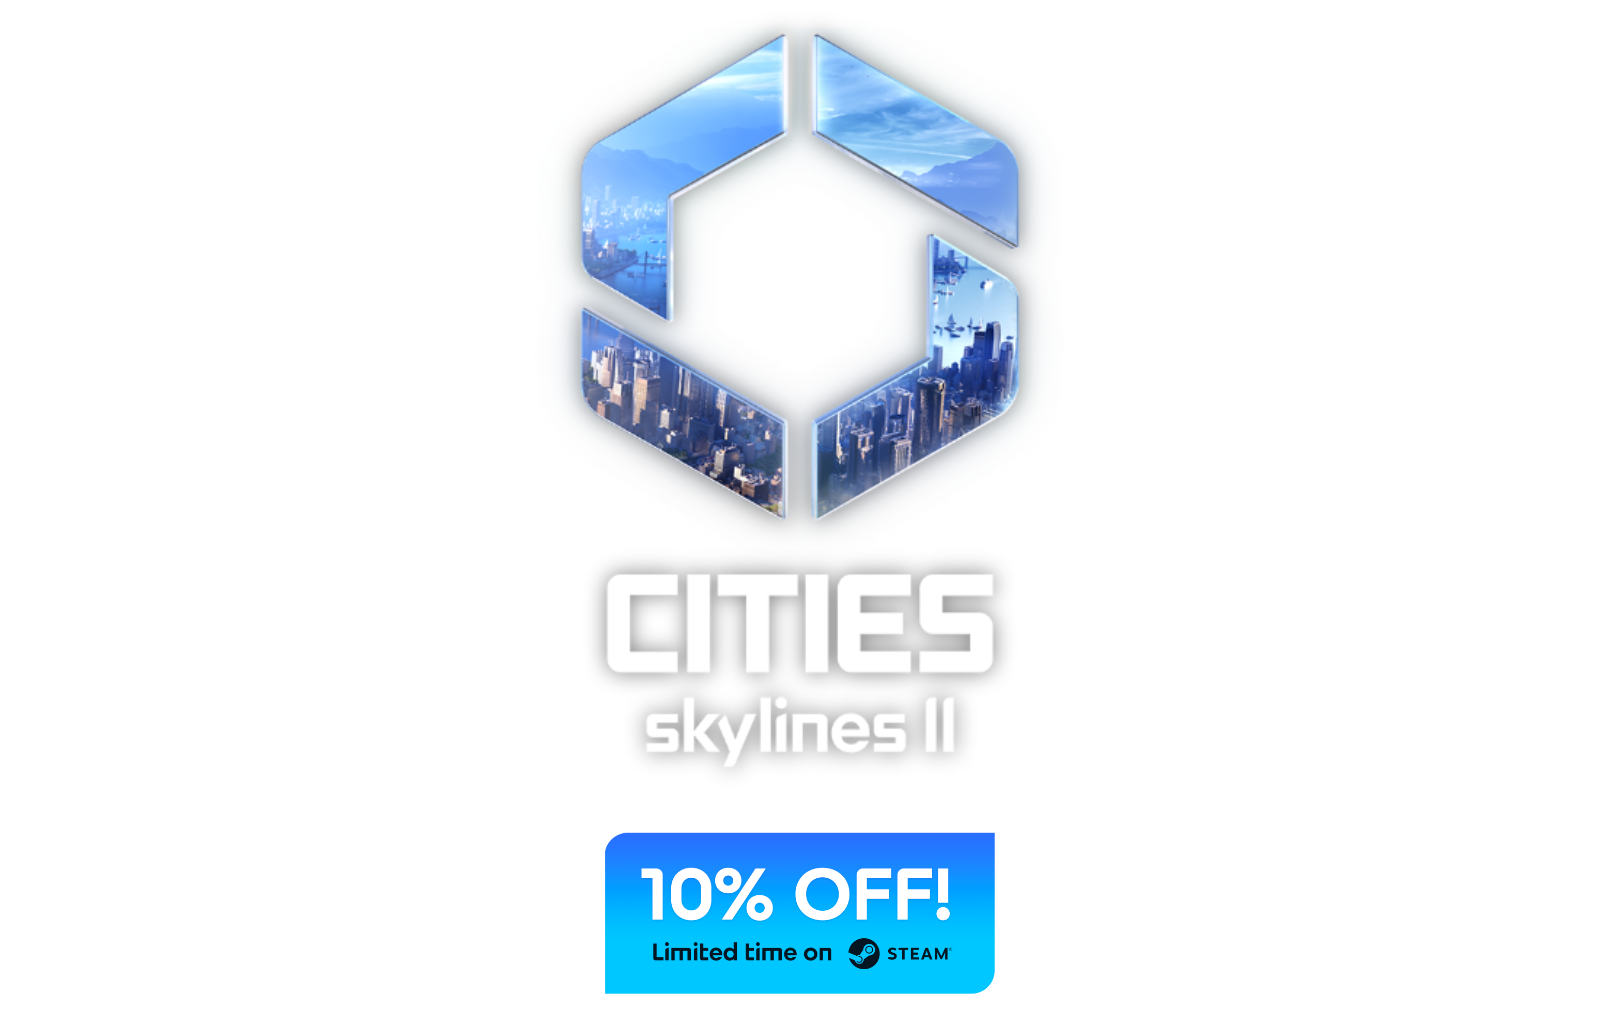 cities-skylines-ii-logo-header-202312